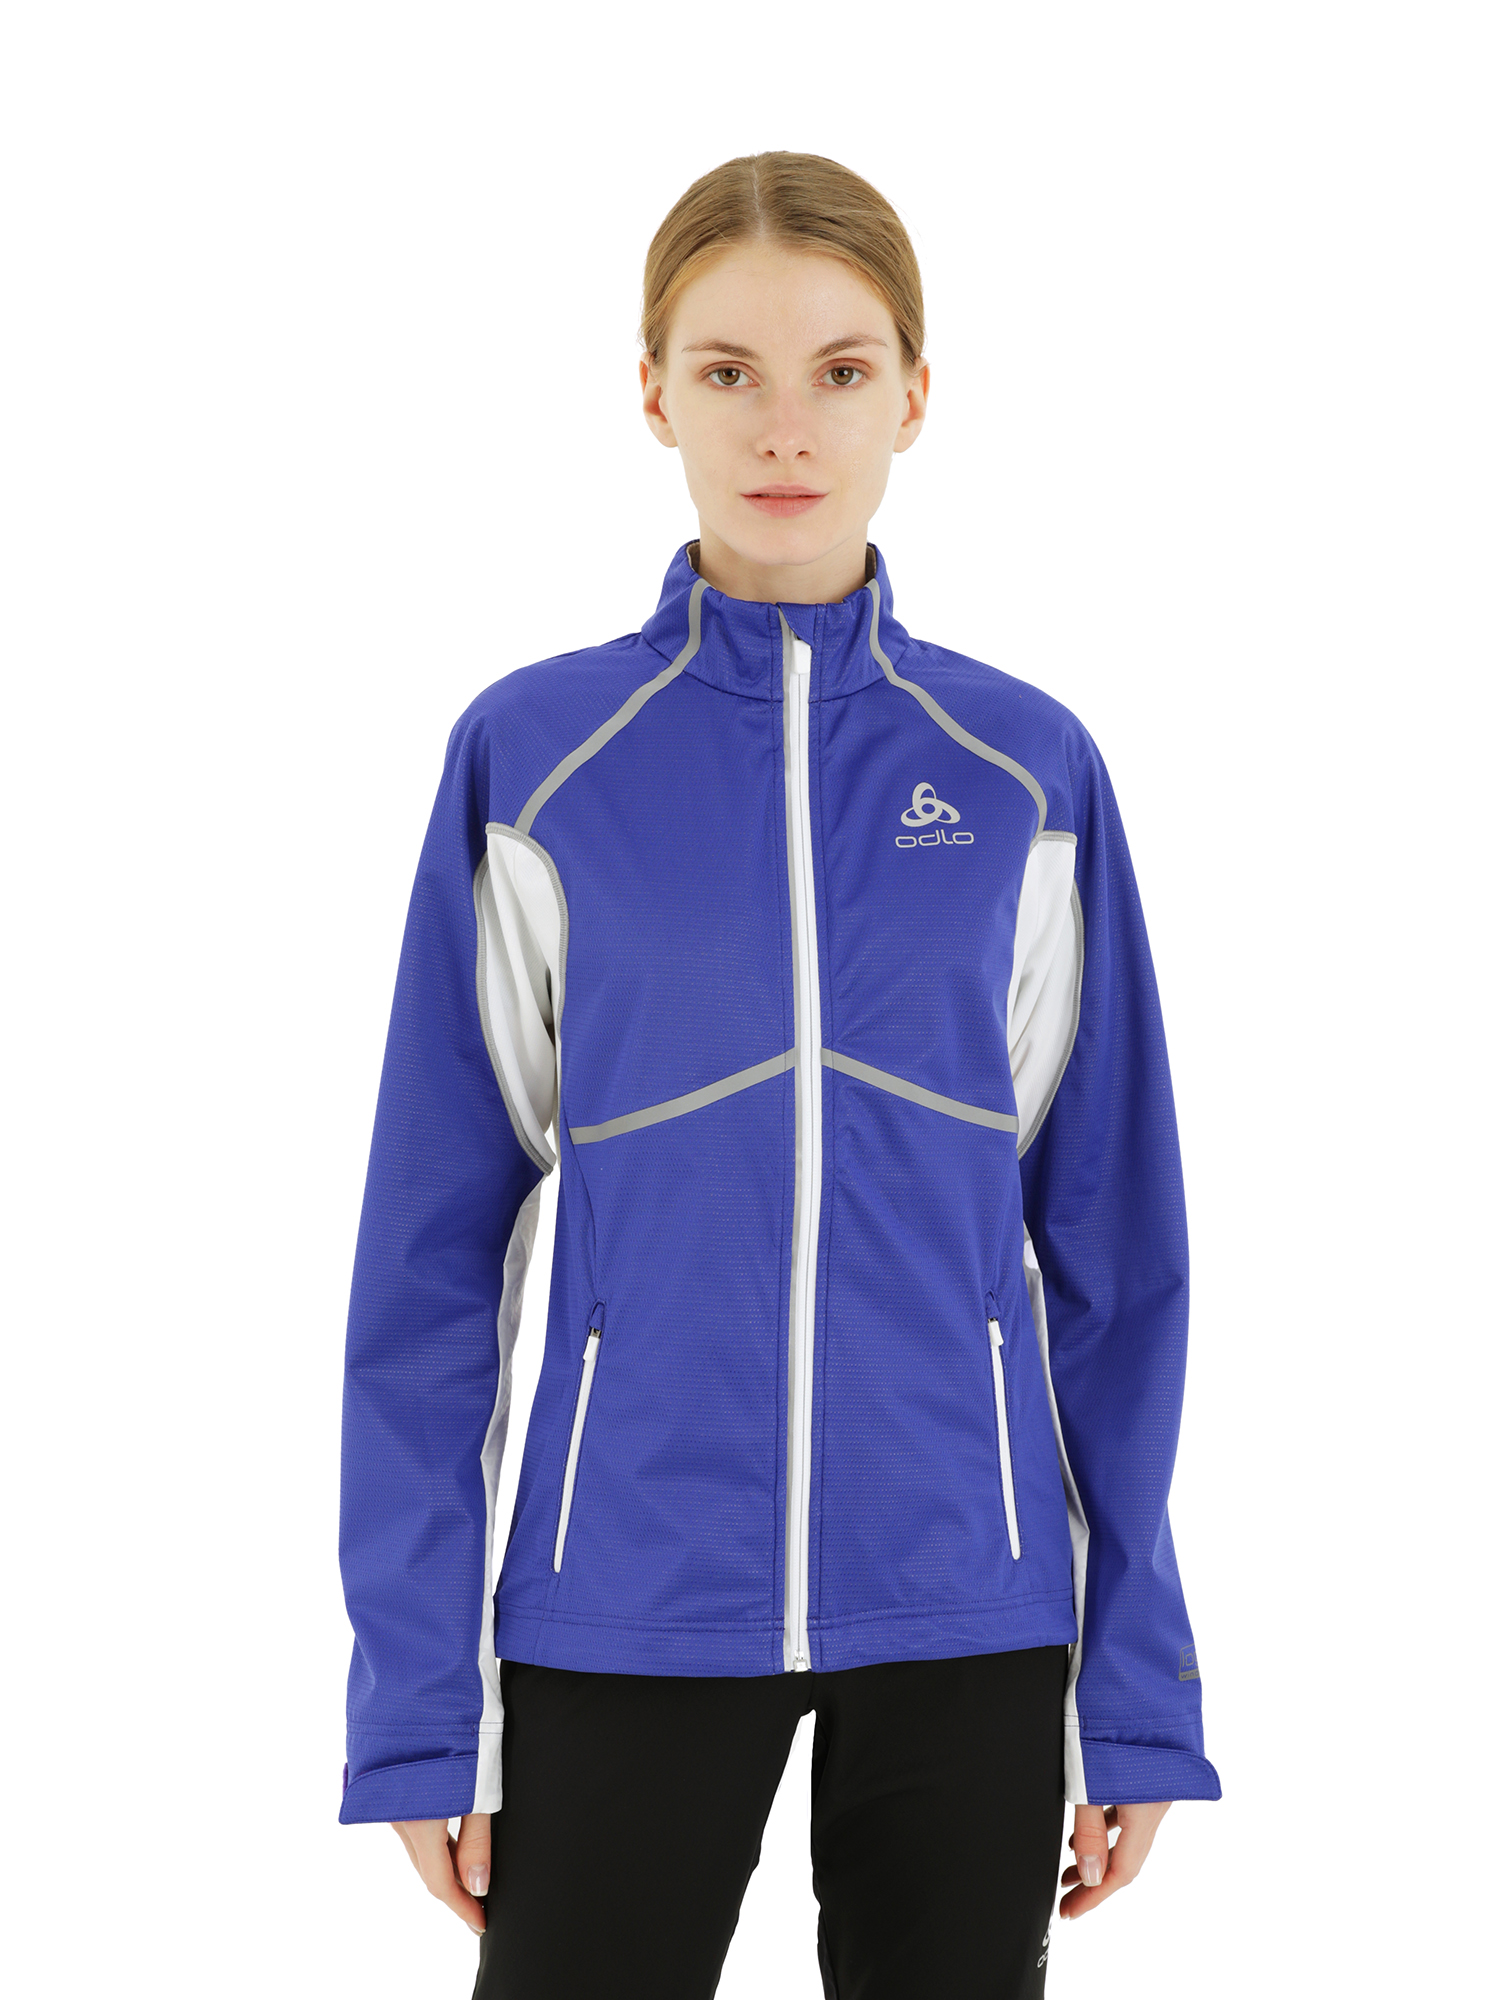 Спортивная ветровка женская Odlo Jacket Frequency X синяя S